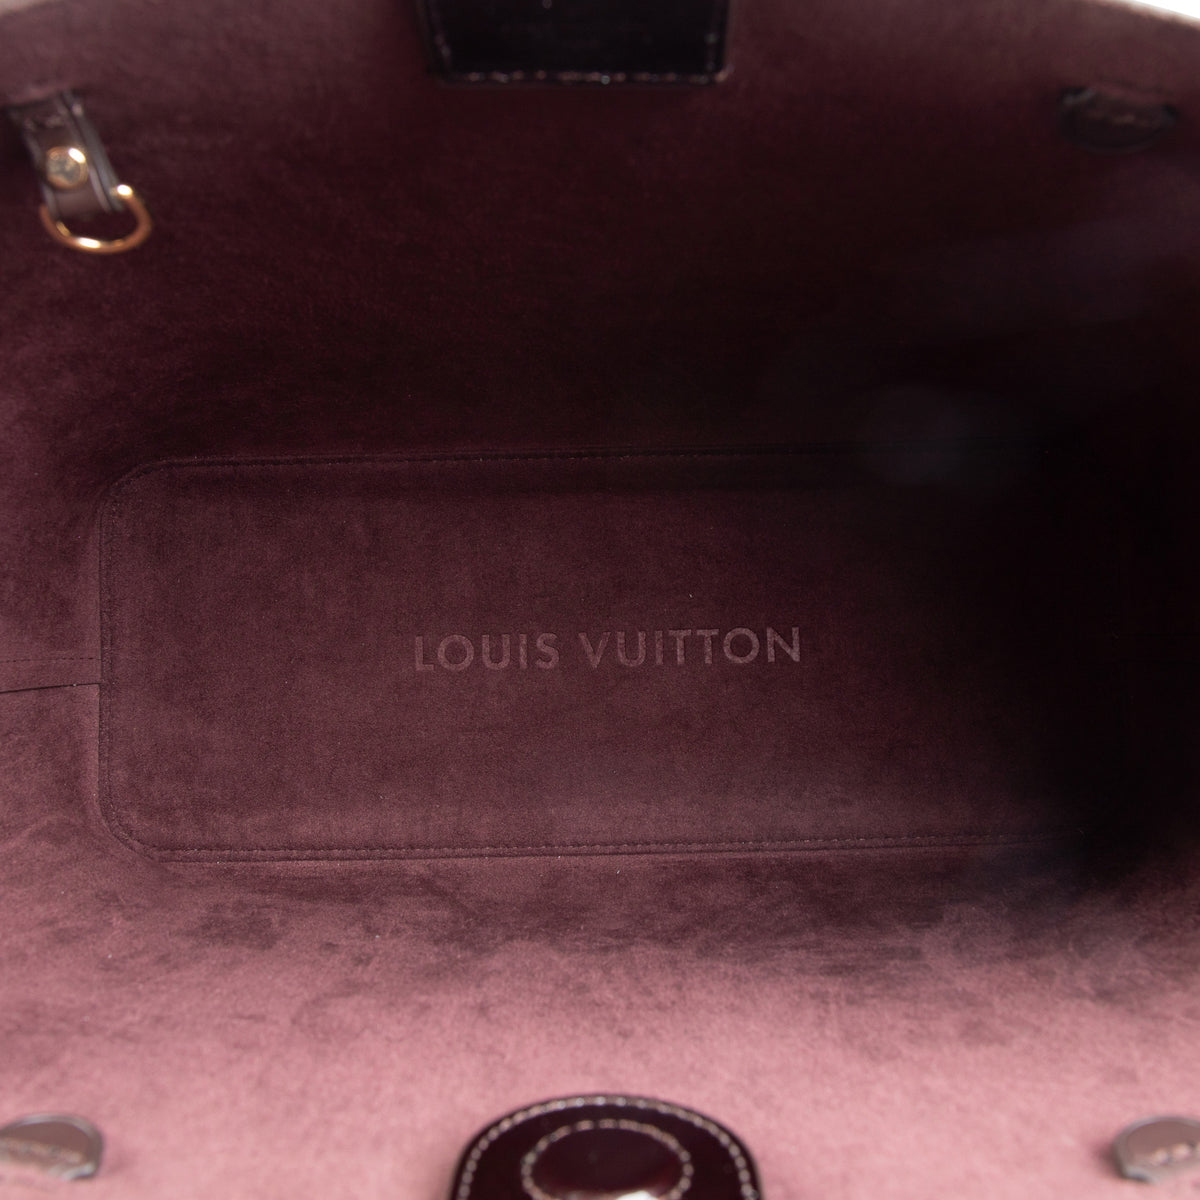 Louis Vuitton Long Beach Tote Bag